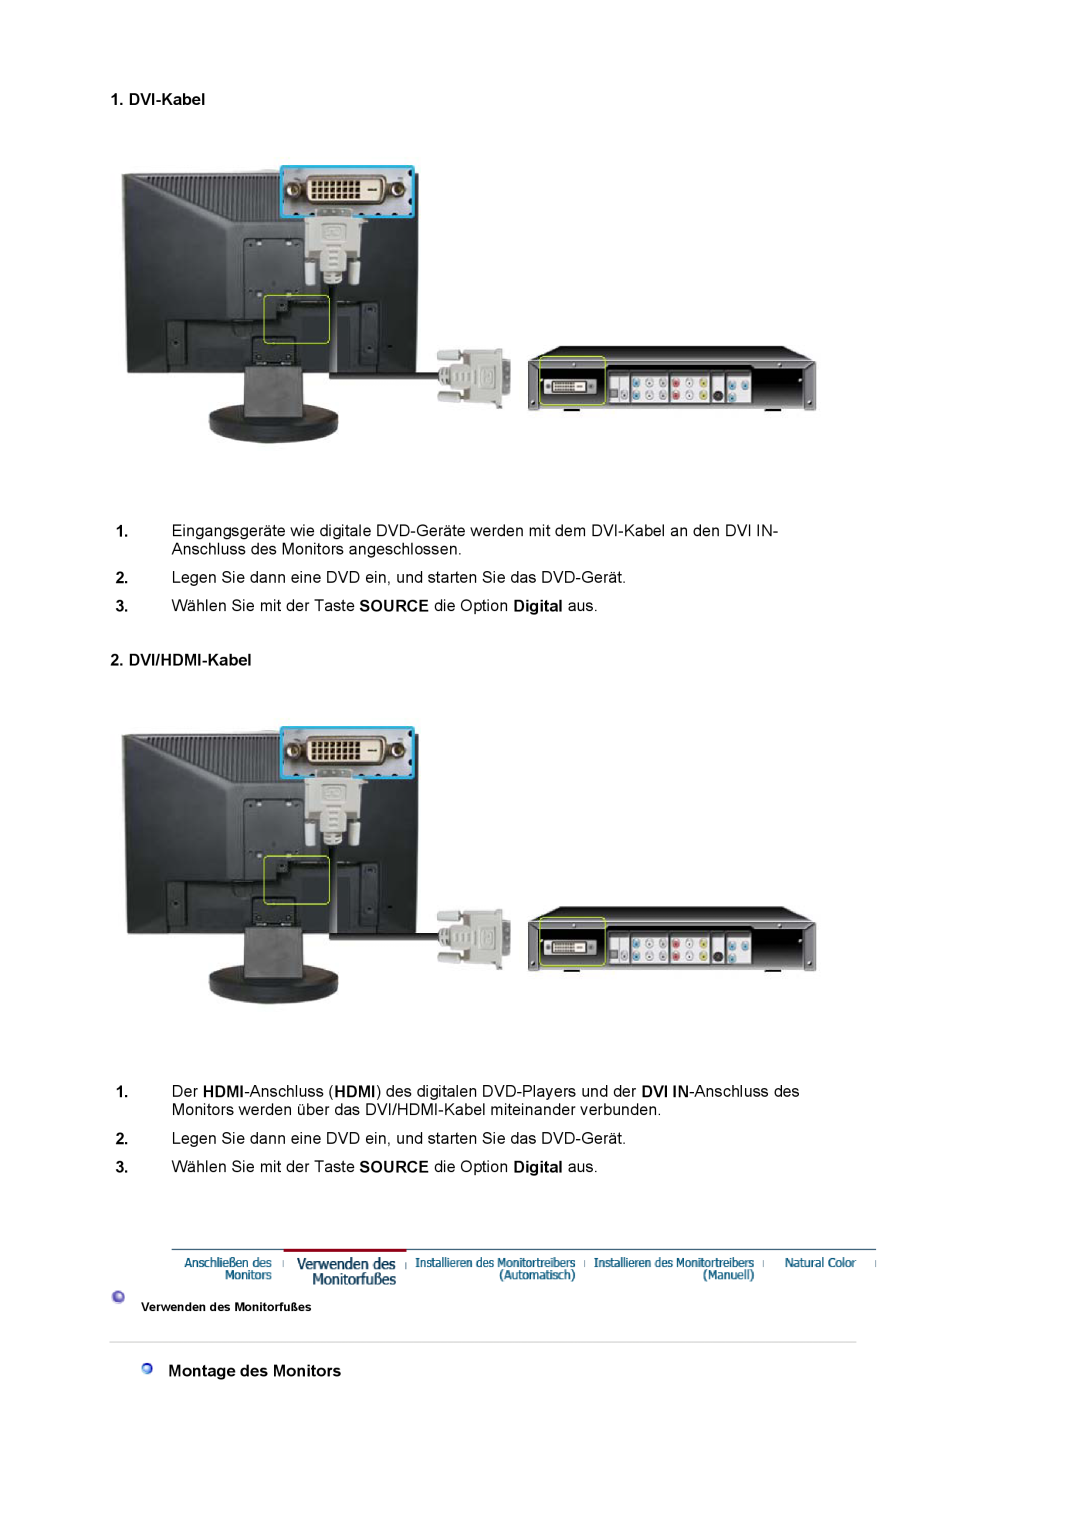 Samsung LS19HAWCSQ/EDC, LS19HAWCSH/EDC manual DVI-Kabel, DVI/HDMI-Kabel, Montage des Monitors, Verwenden des Monitorfußes 